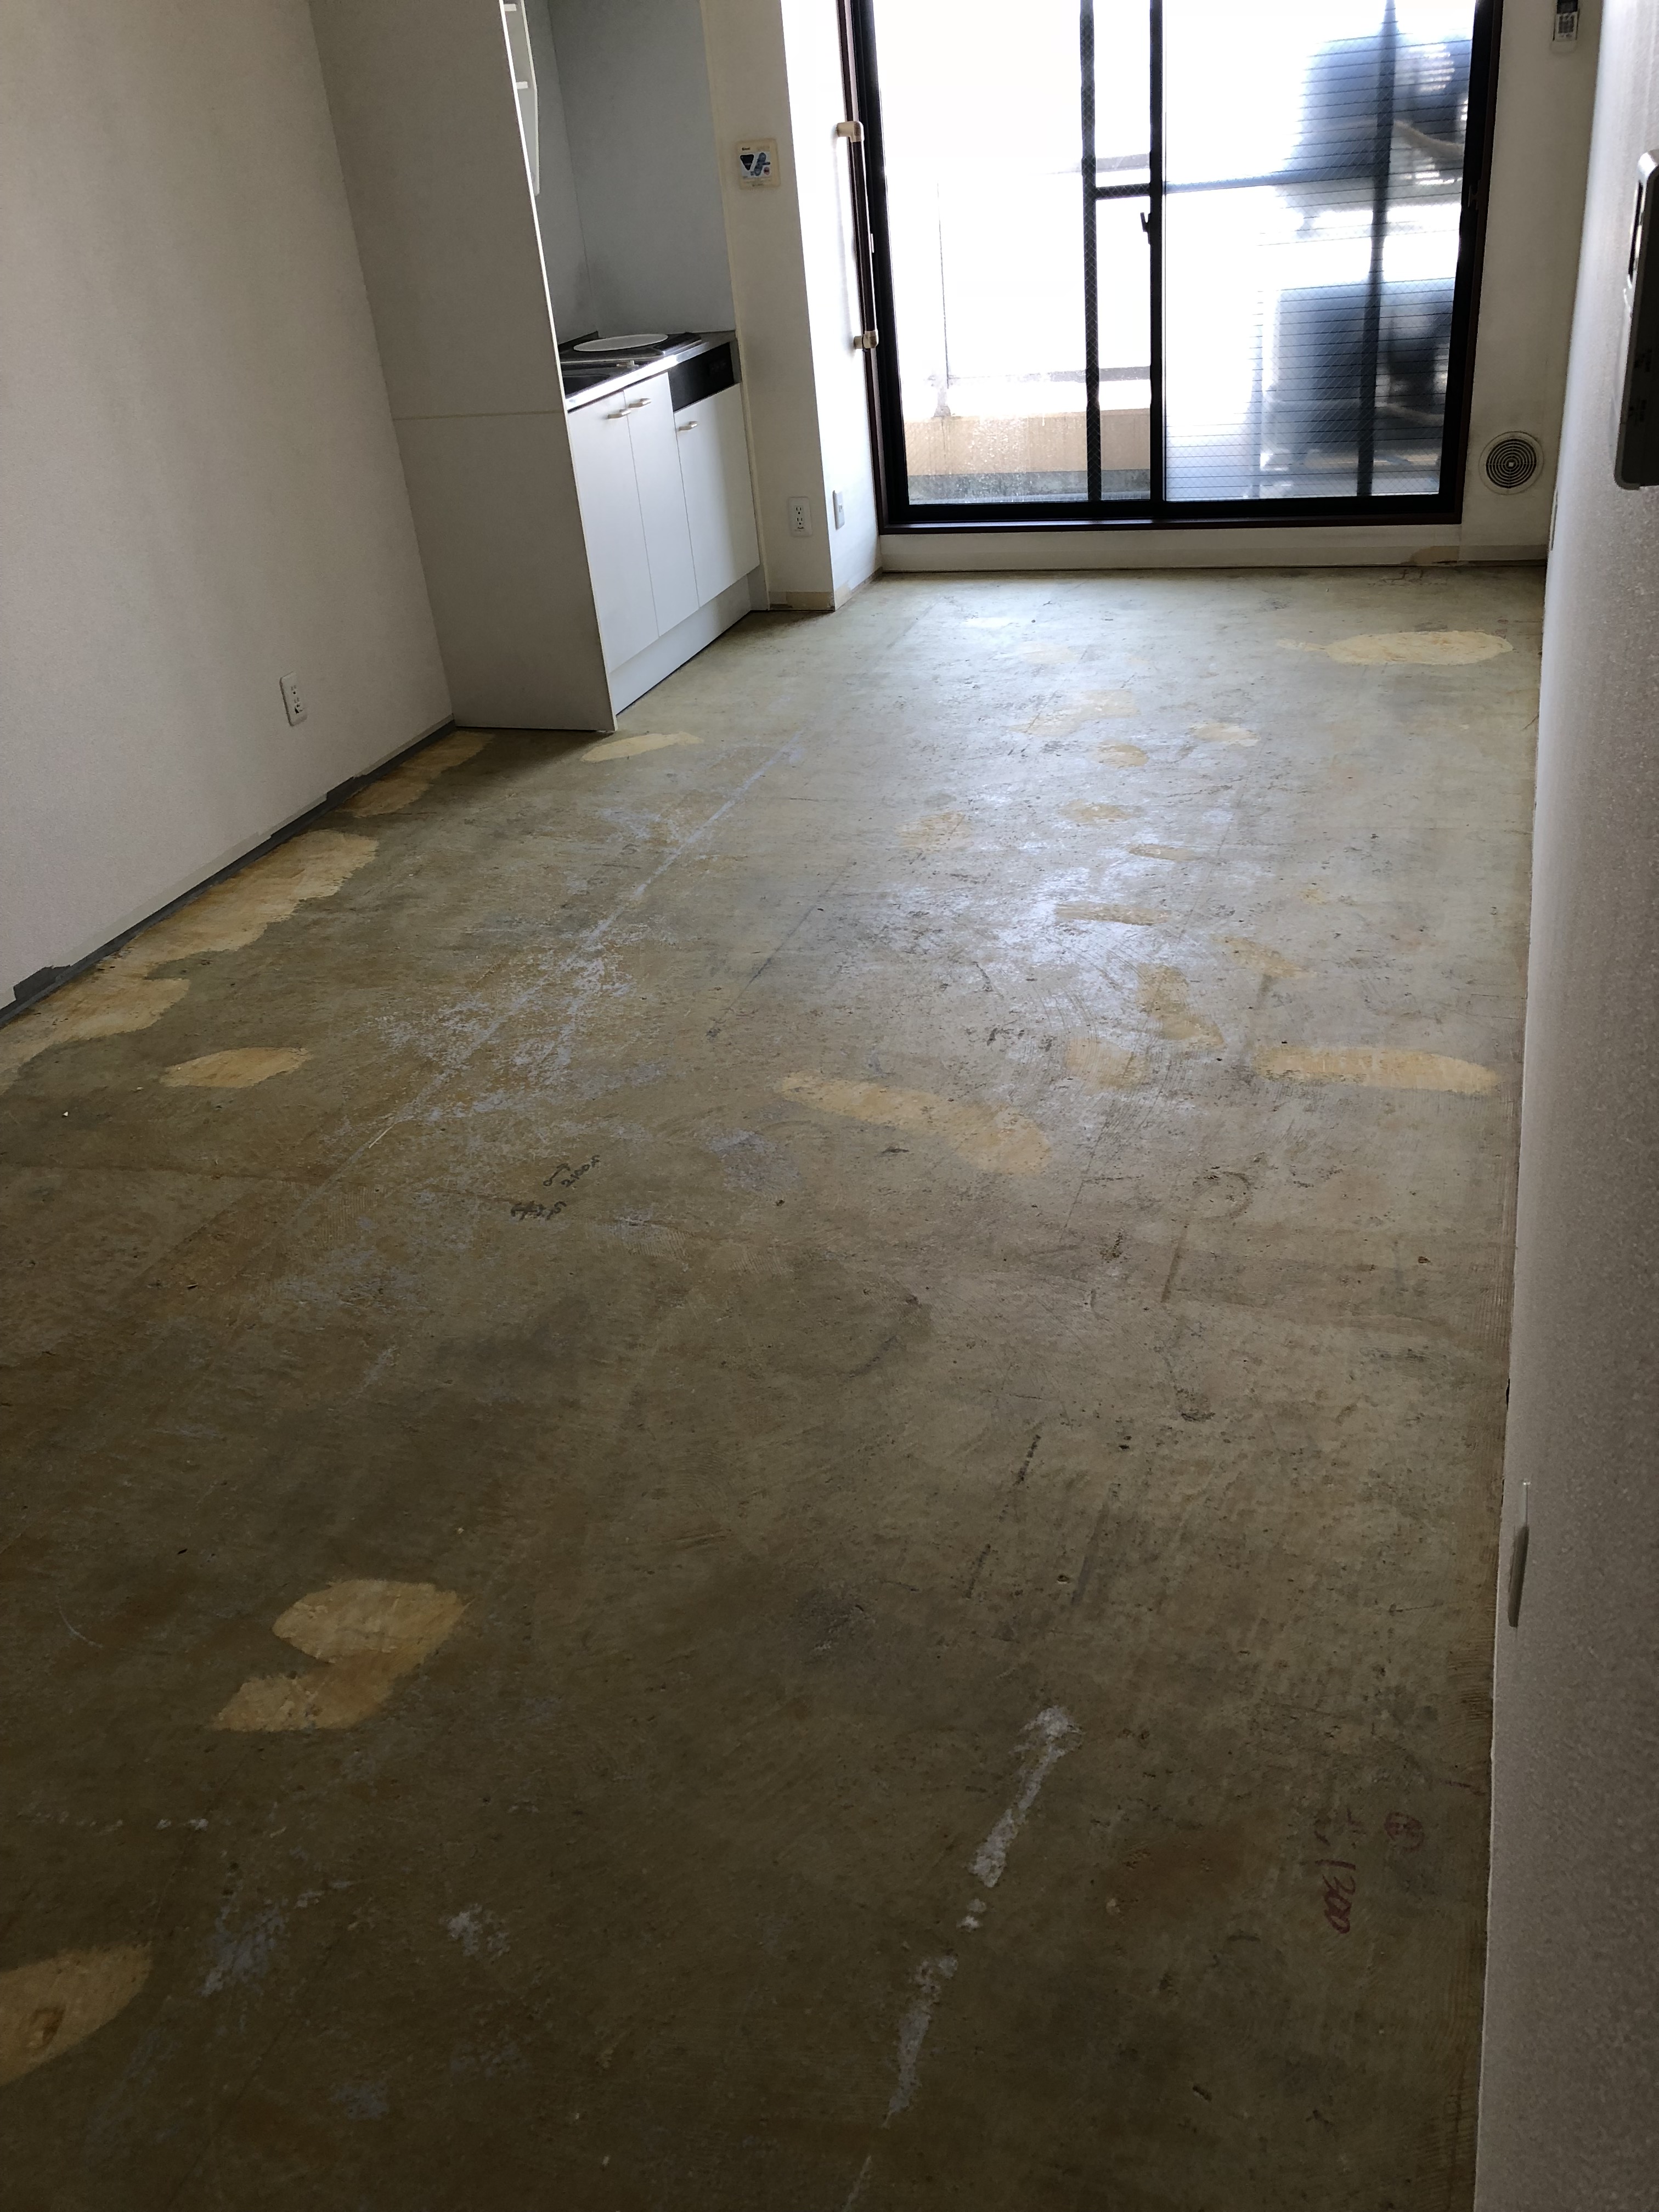 湘南台・高齢者介護住宅の壁、床の原状回復のご依頼を頂きました。